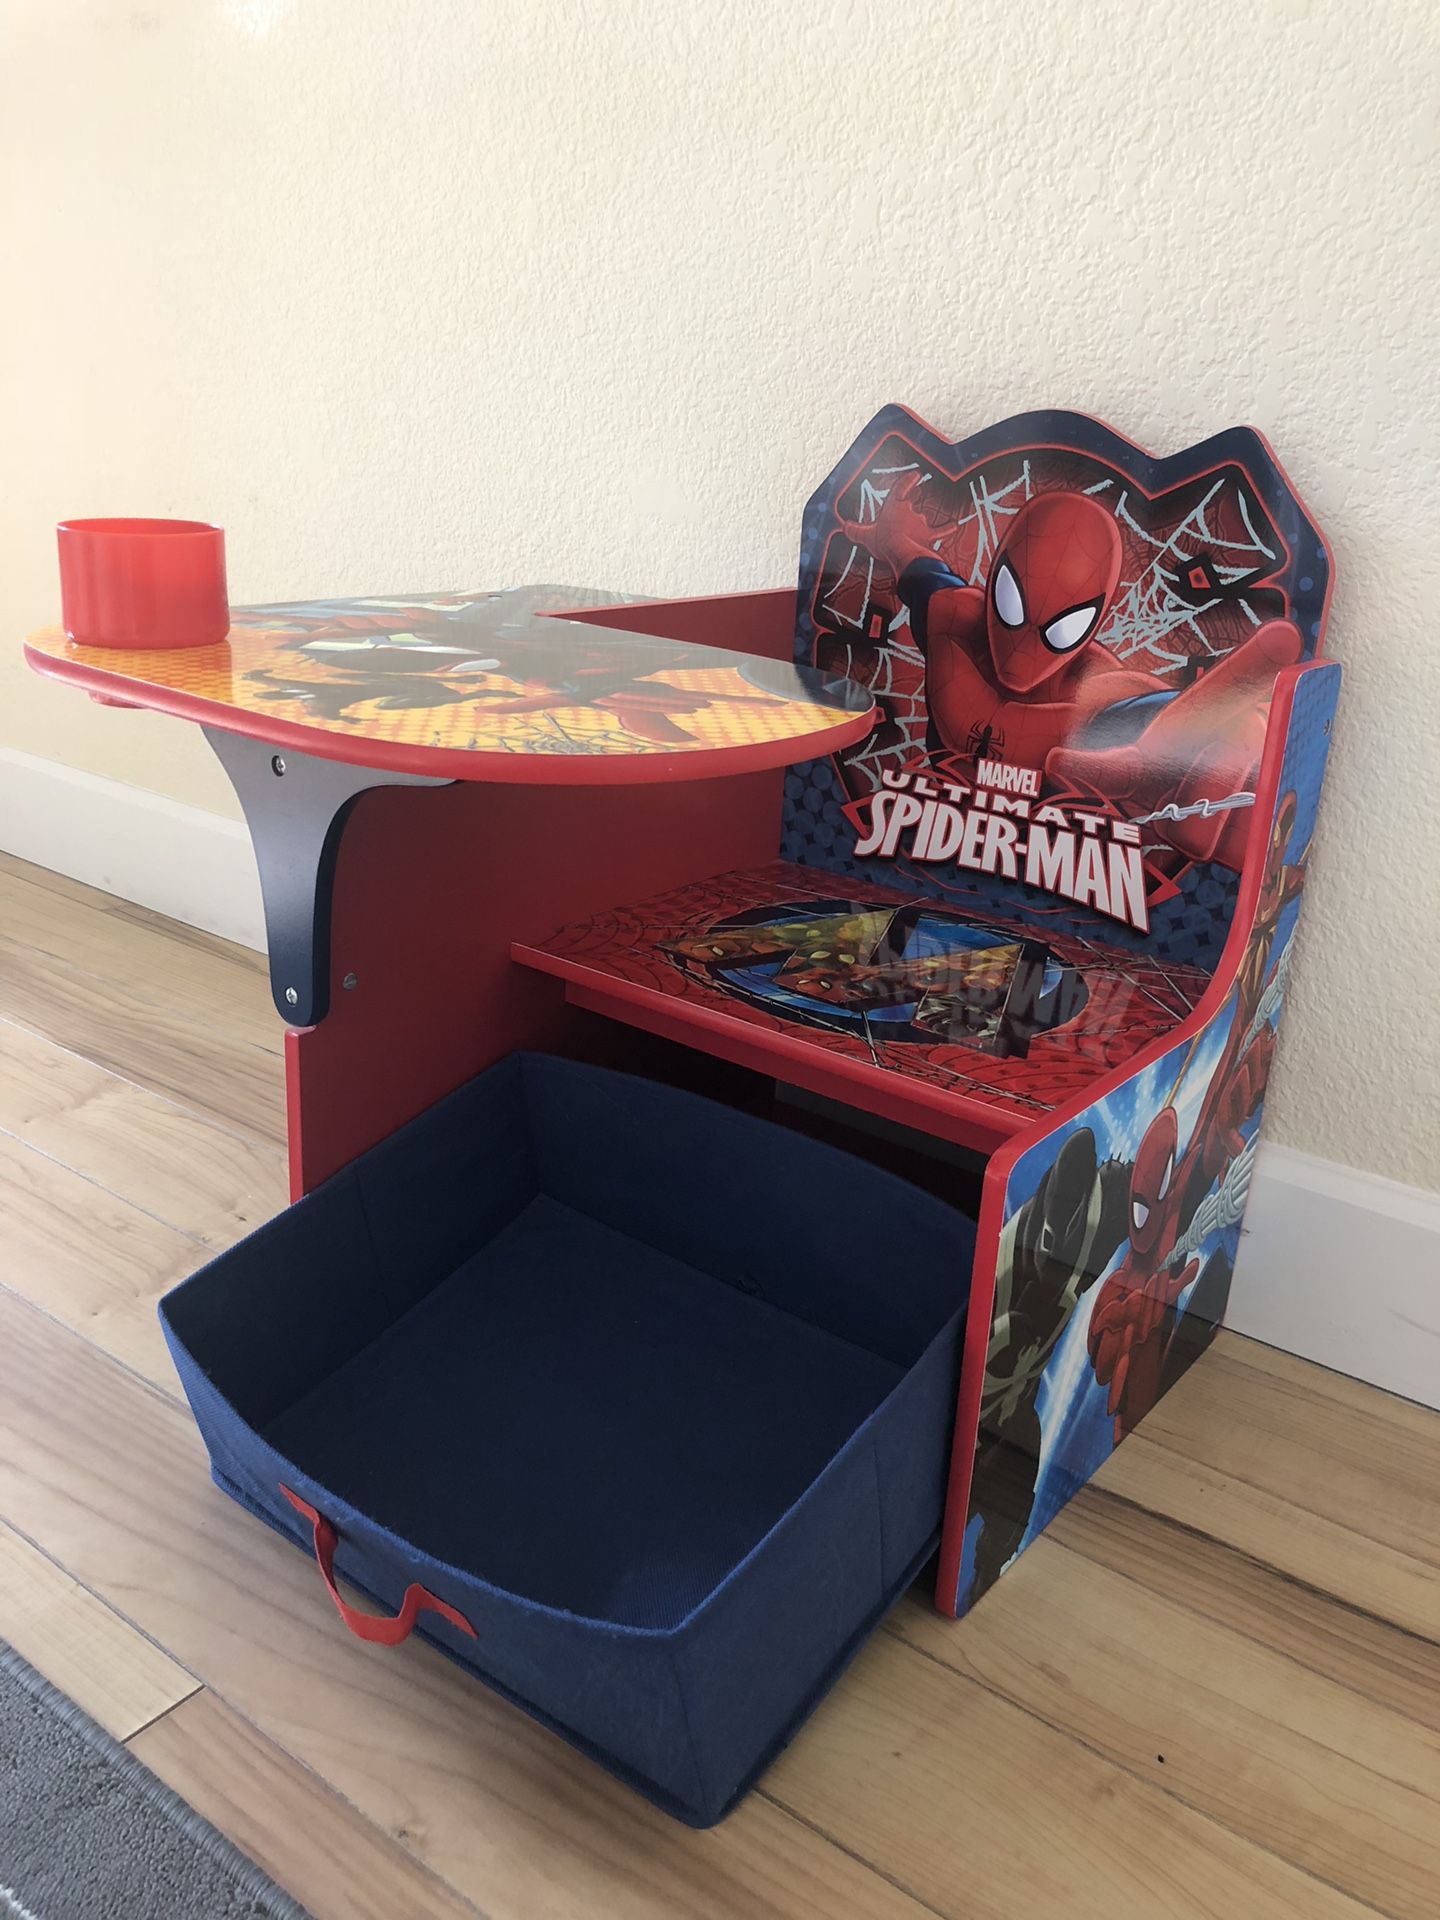 Spider-Man kid’s desk